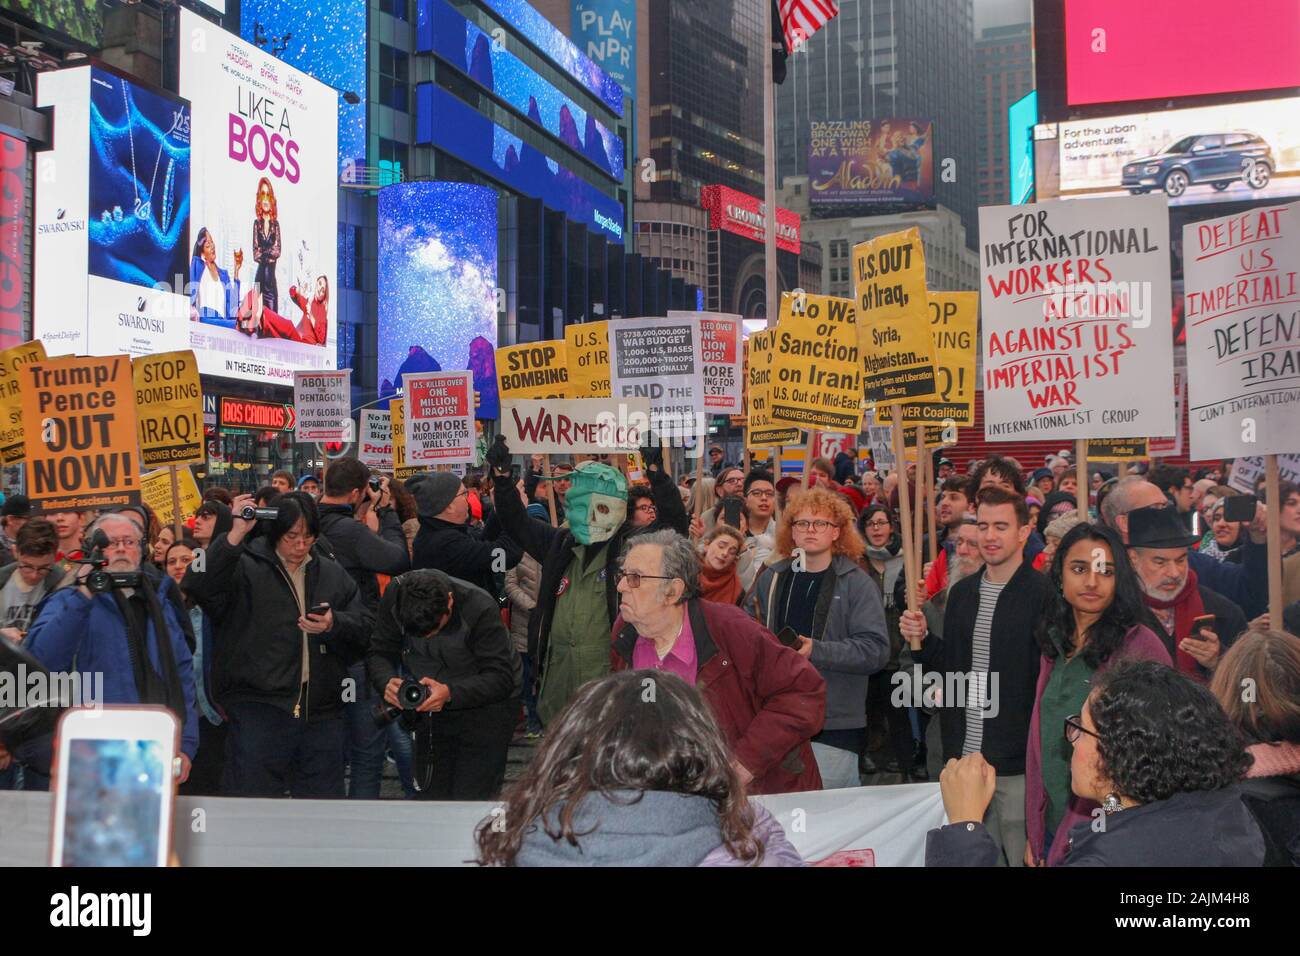 New York, NEW YORK - Januar 04, 2020: Hunderte von Menschen auf dem Times Square in New York City versammelt, Krieg gegen den Iran und Irak am 4. Januar 2020 zu protestieren. Stockfoto